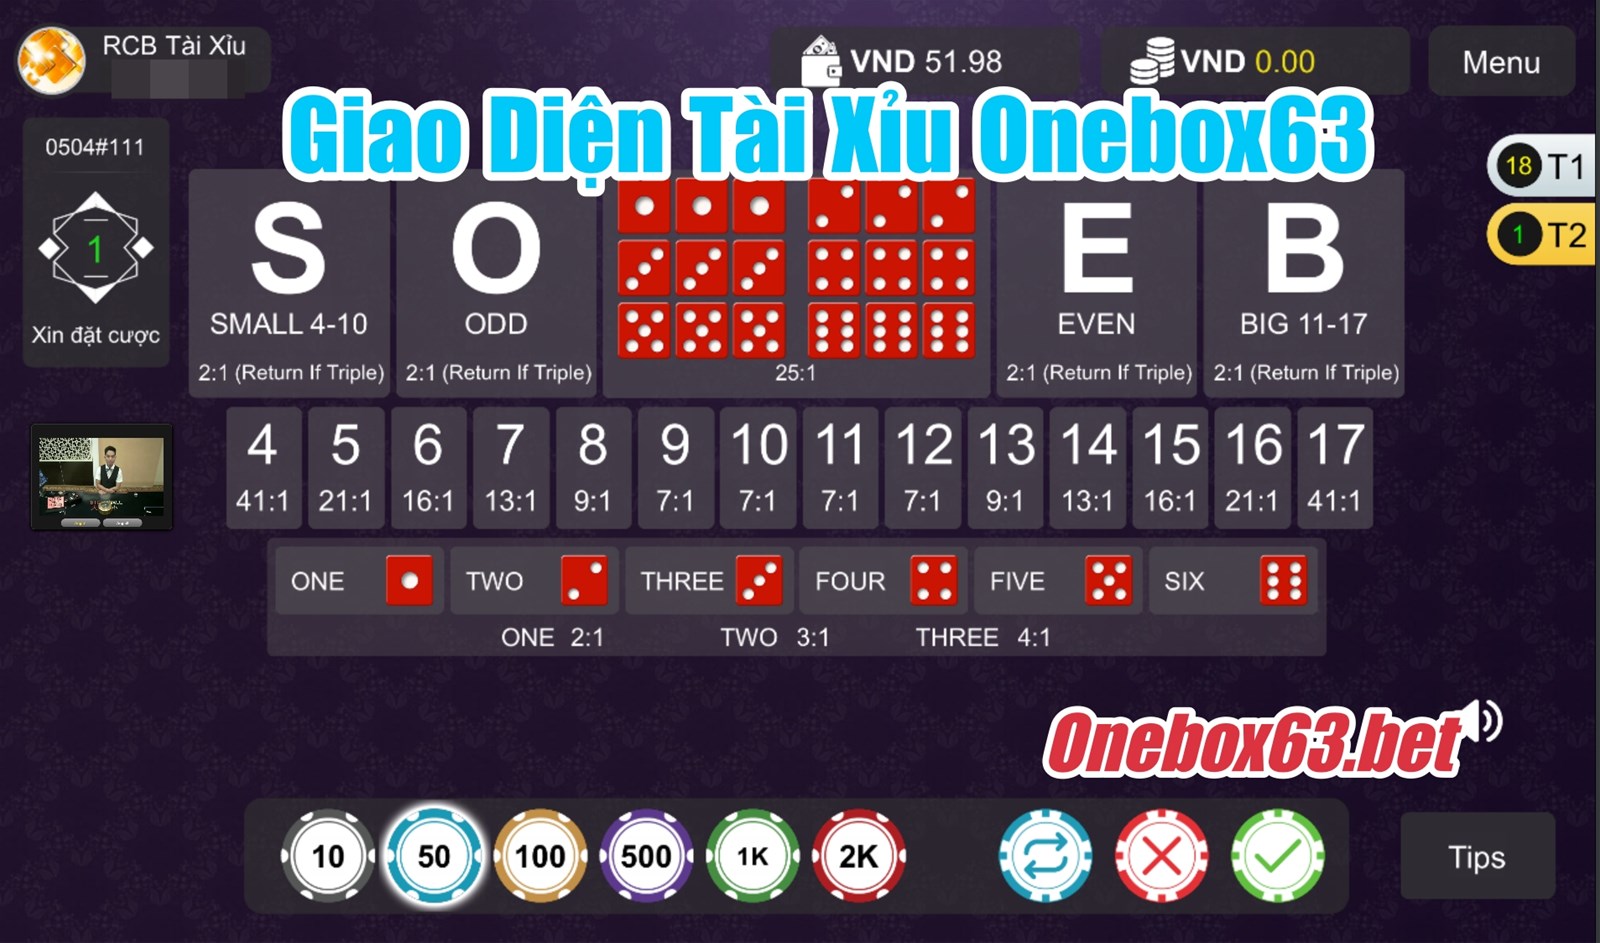 Giao diện tài xỉu Onebox63 người thật tại Casino